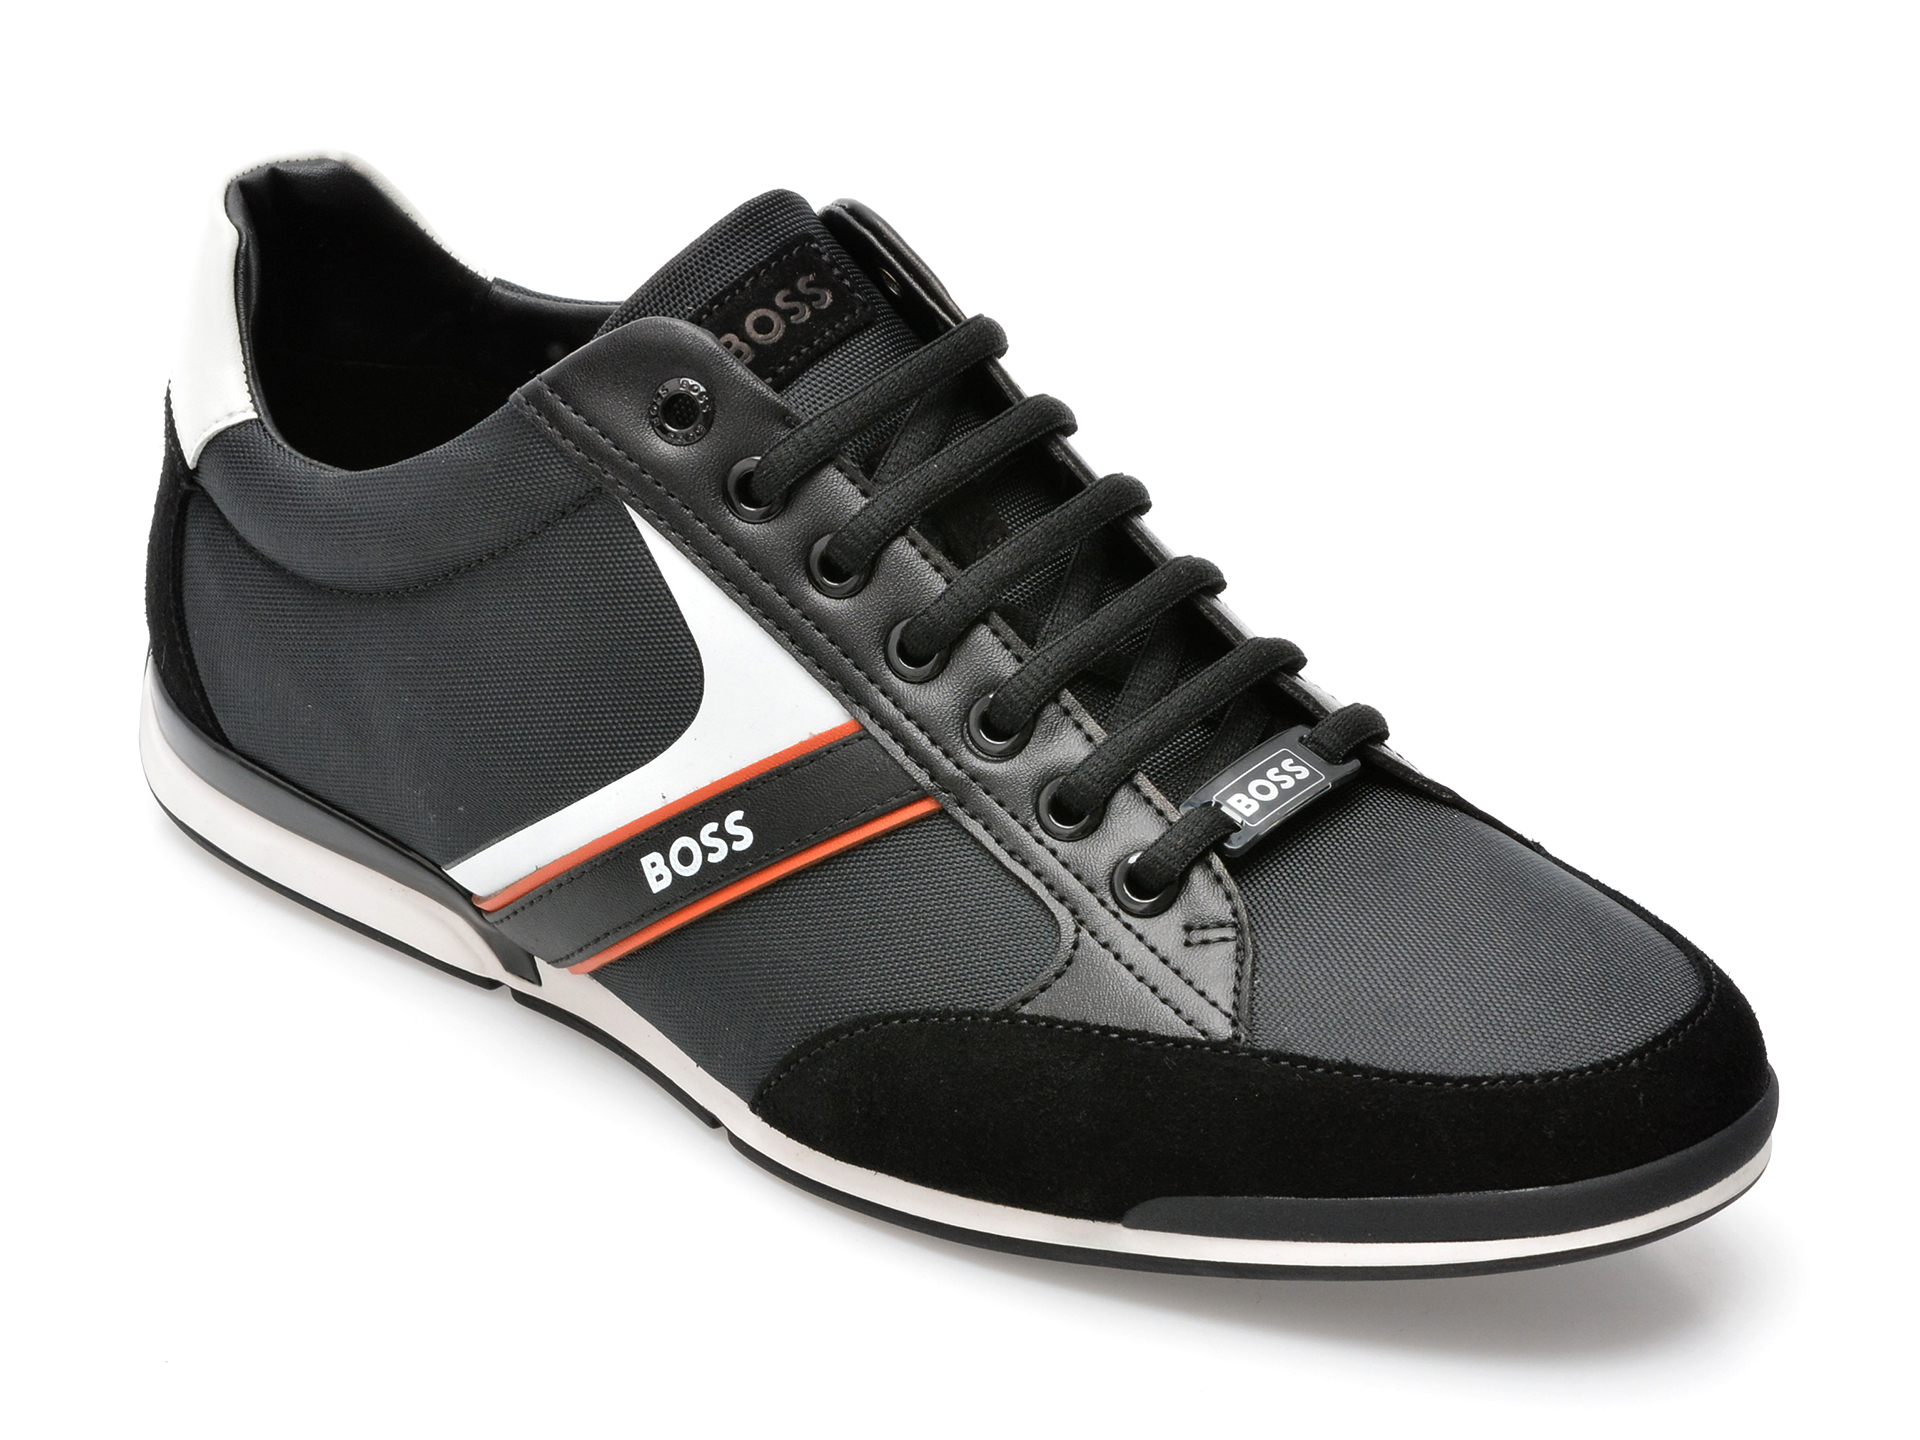 Pantofi sport HUGO BOSS negri, 1235, din material textil si piele naturala /barbati/pantofi